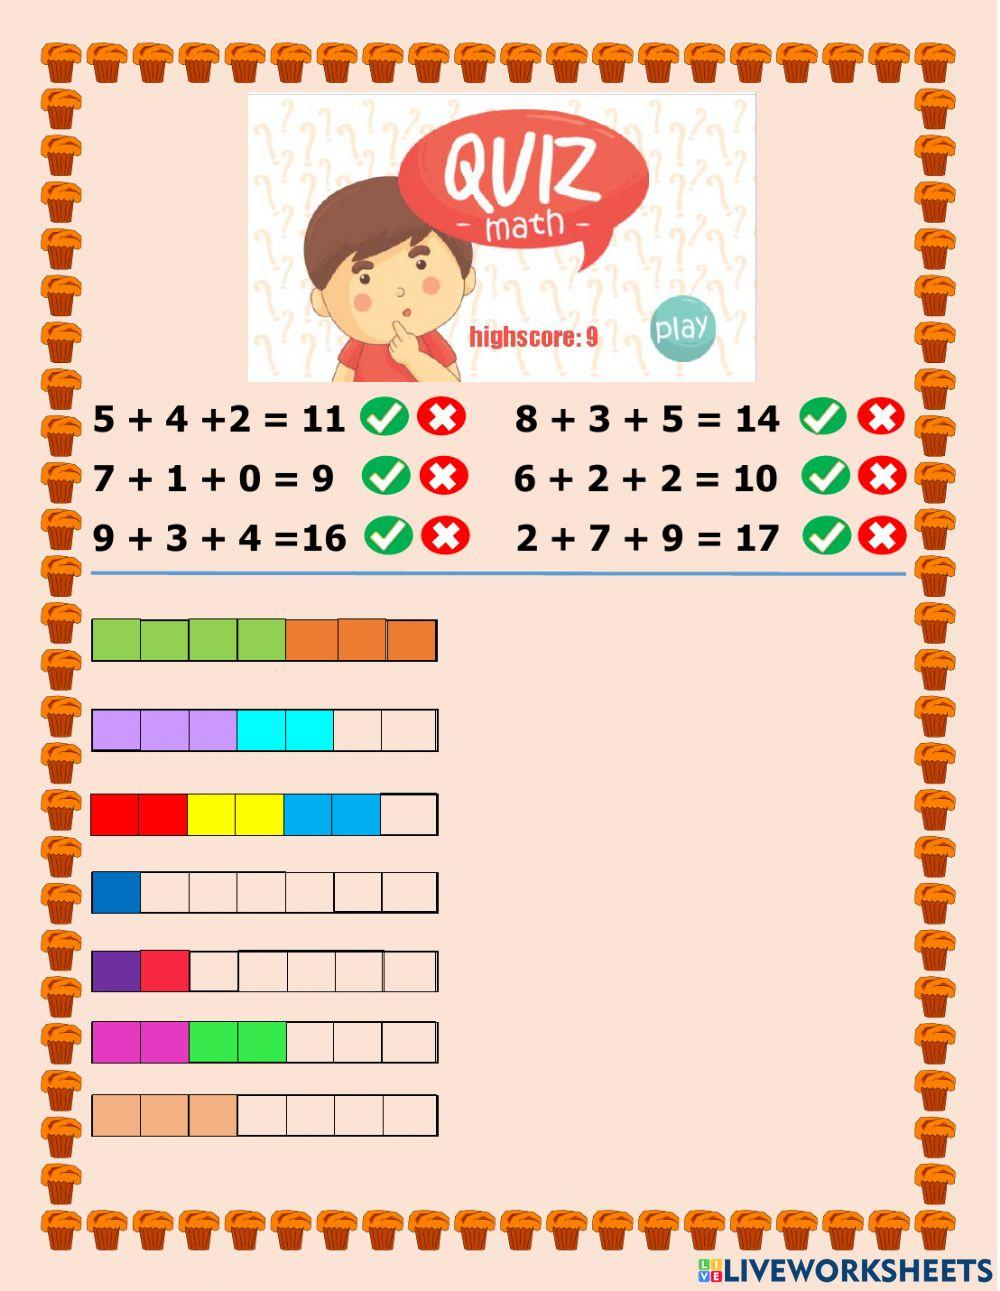 Tabuada do 5, você sabe todas ? #quiz #quizz #math #maths #matematicas